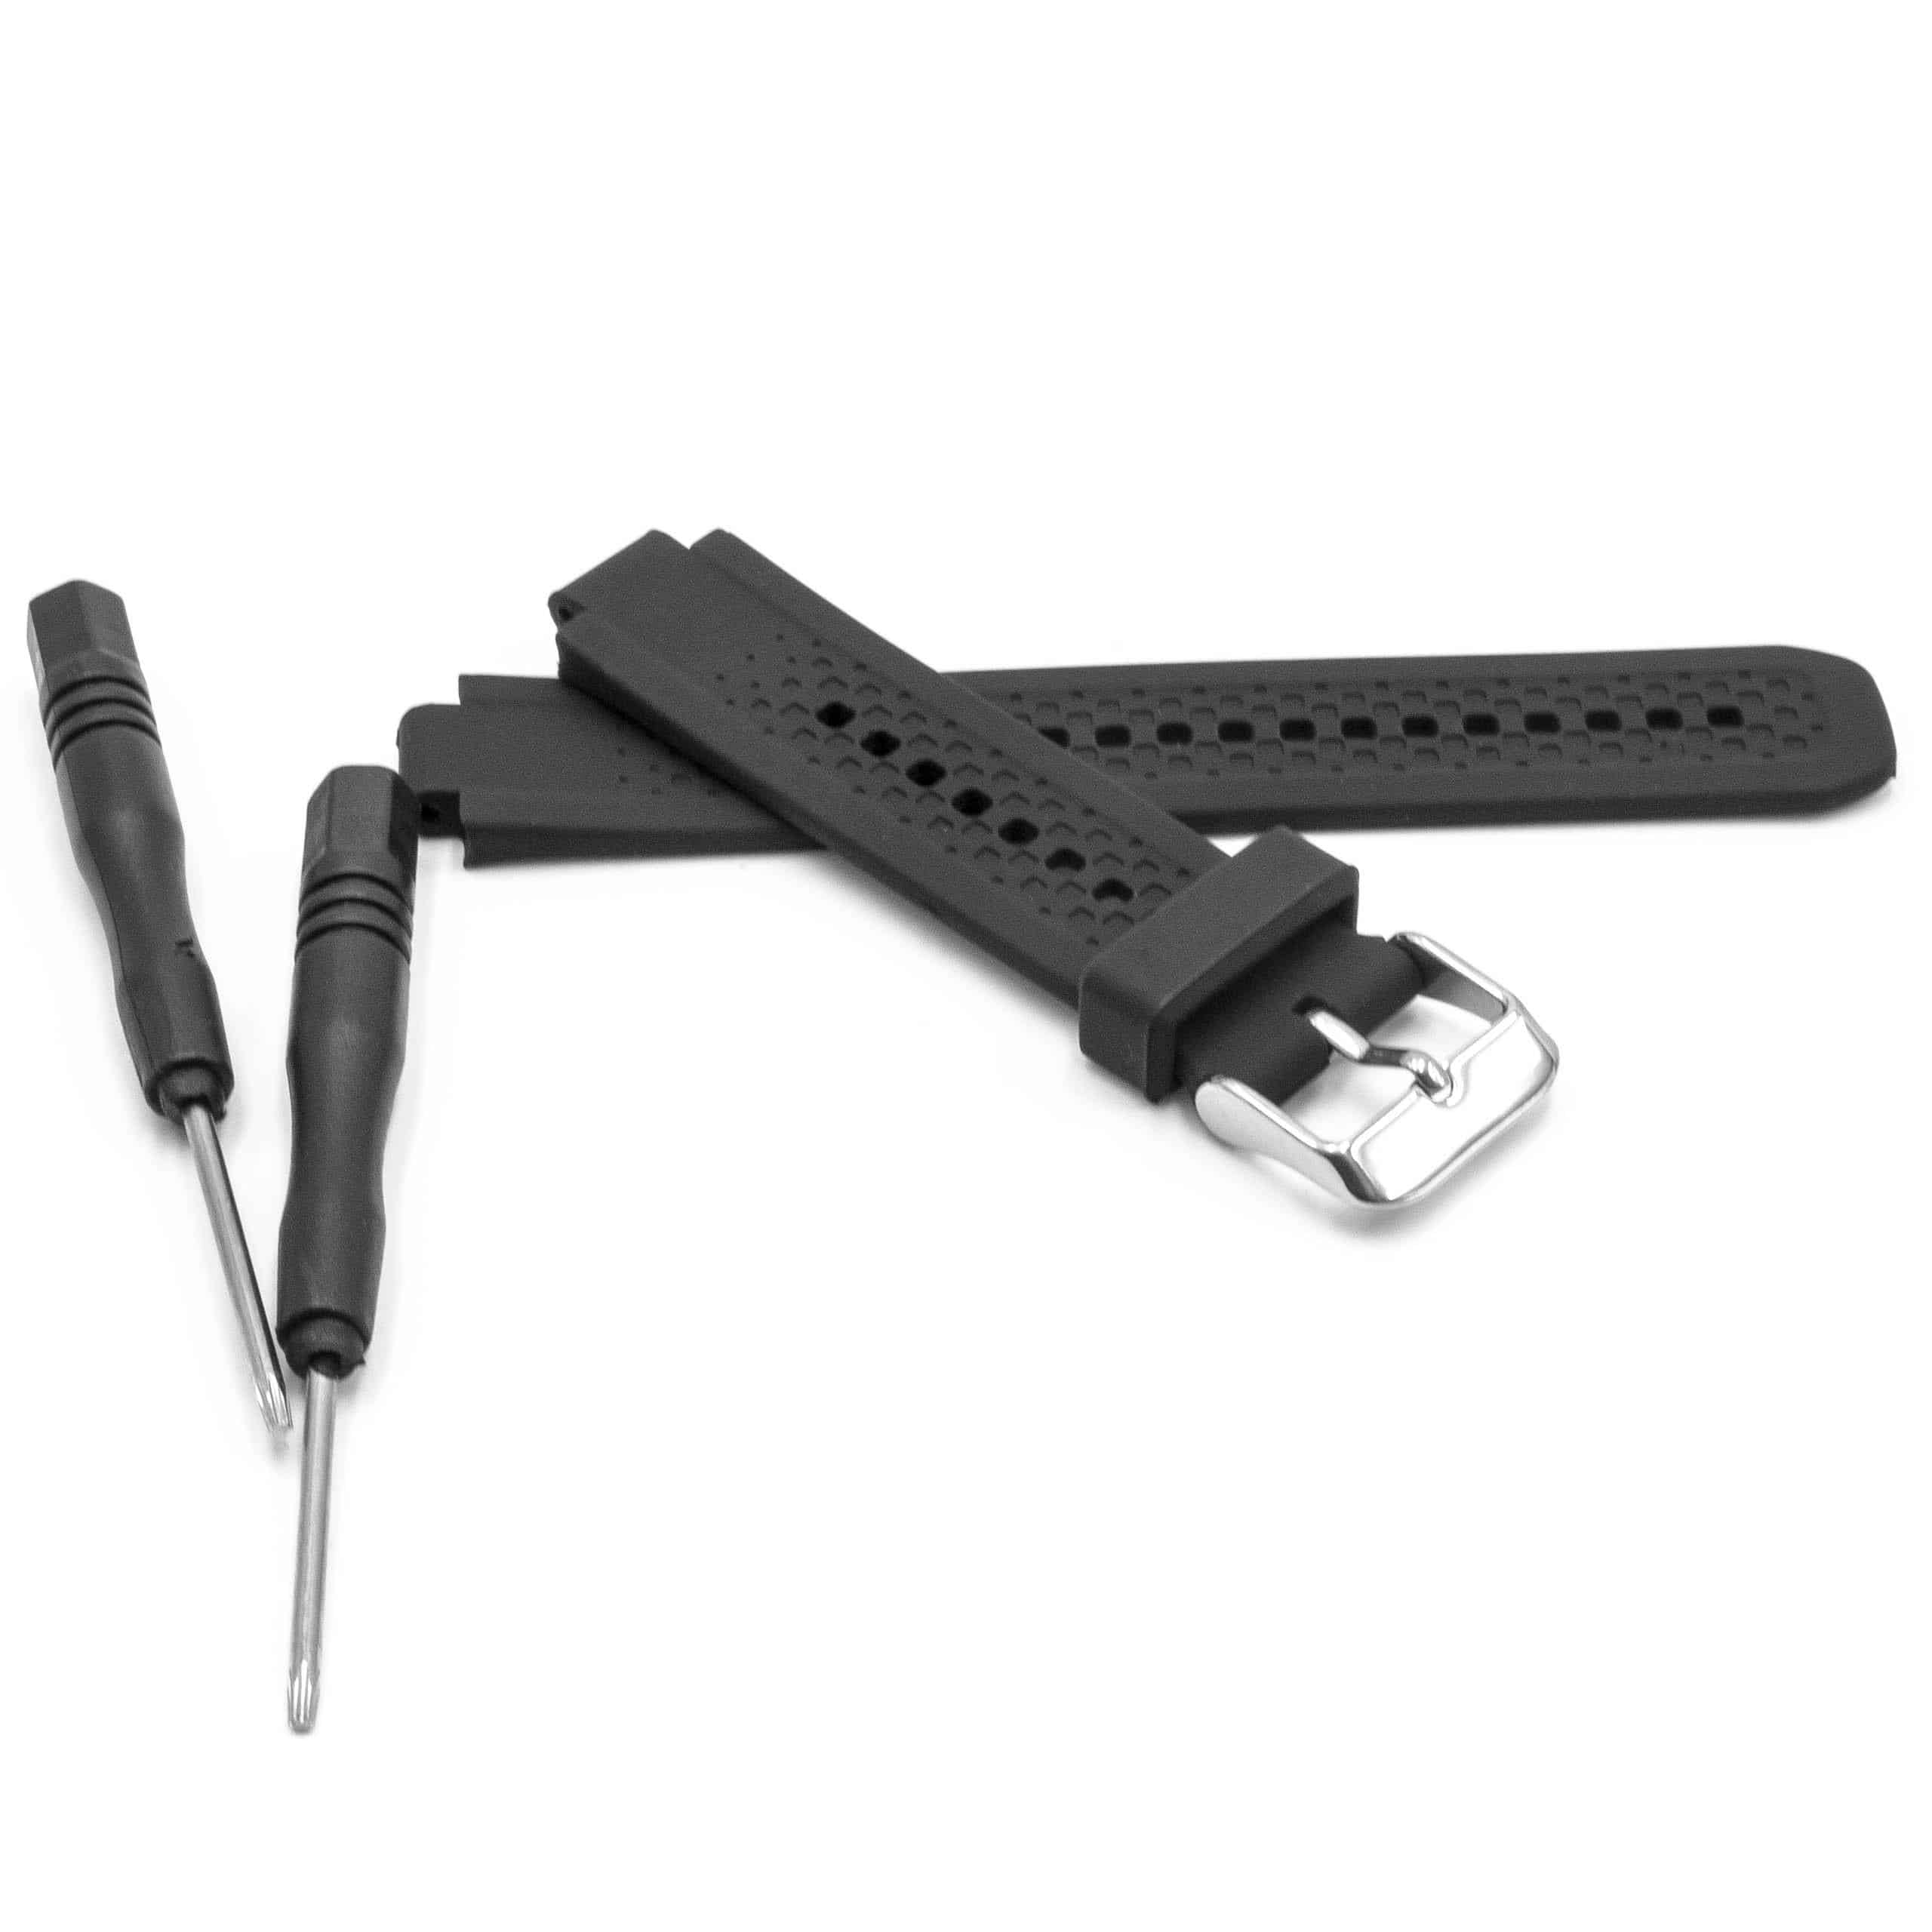 Armband S Damen für Garmin Forerunner Smartwatch - 10,8cm + 8,6 cm lang, 18mm breit, Silikon, schwarz